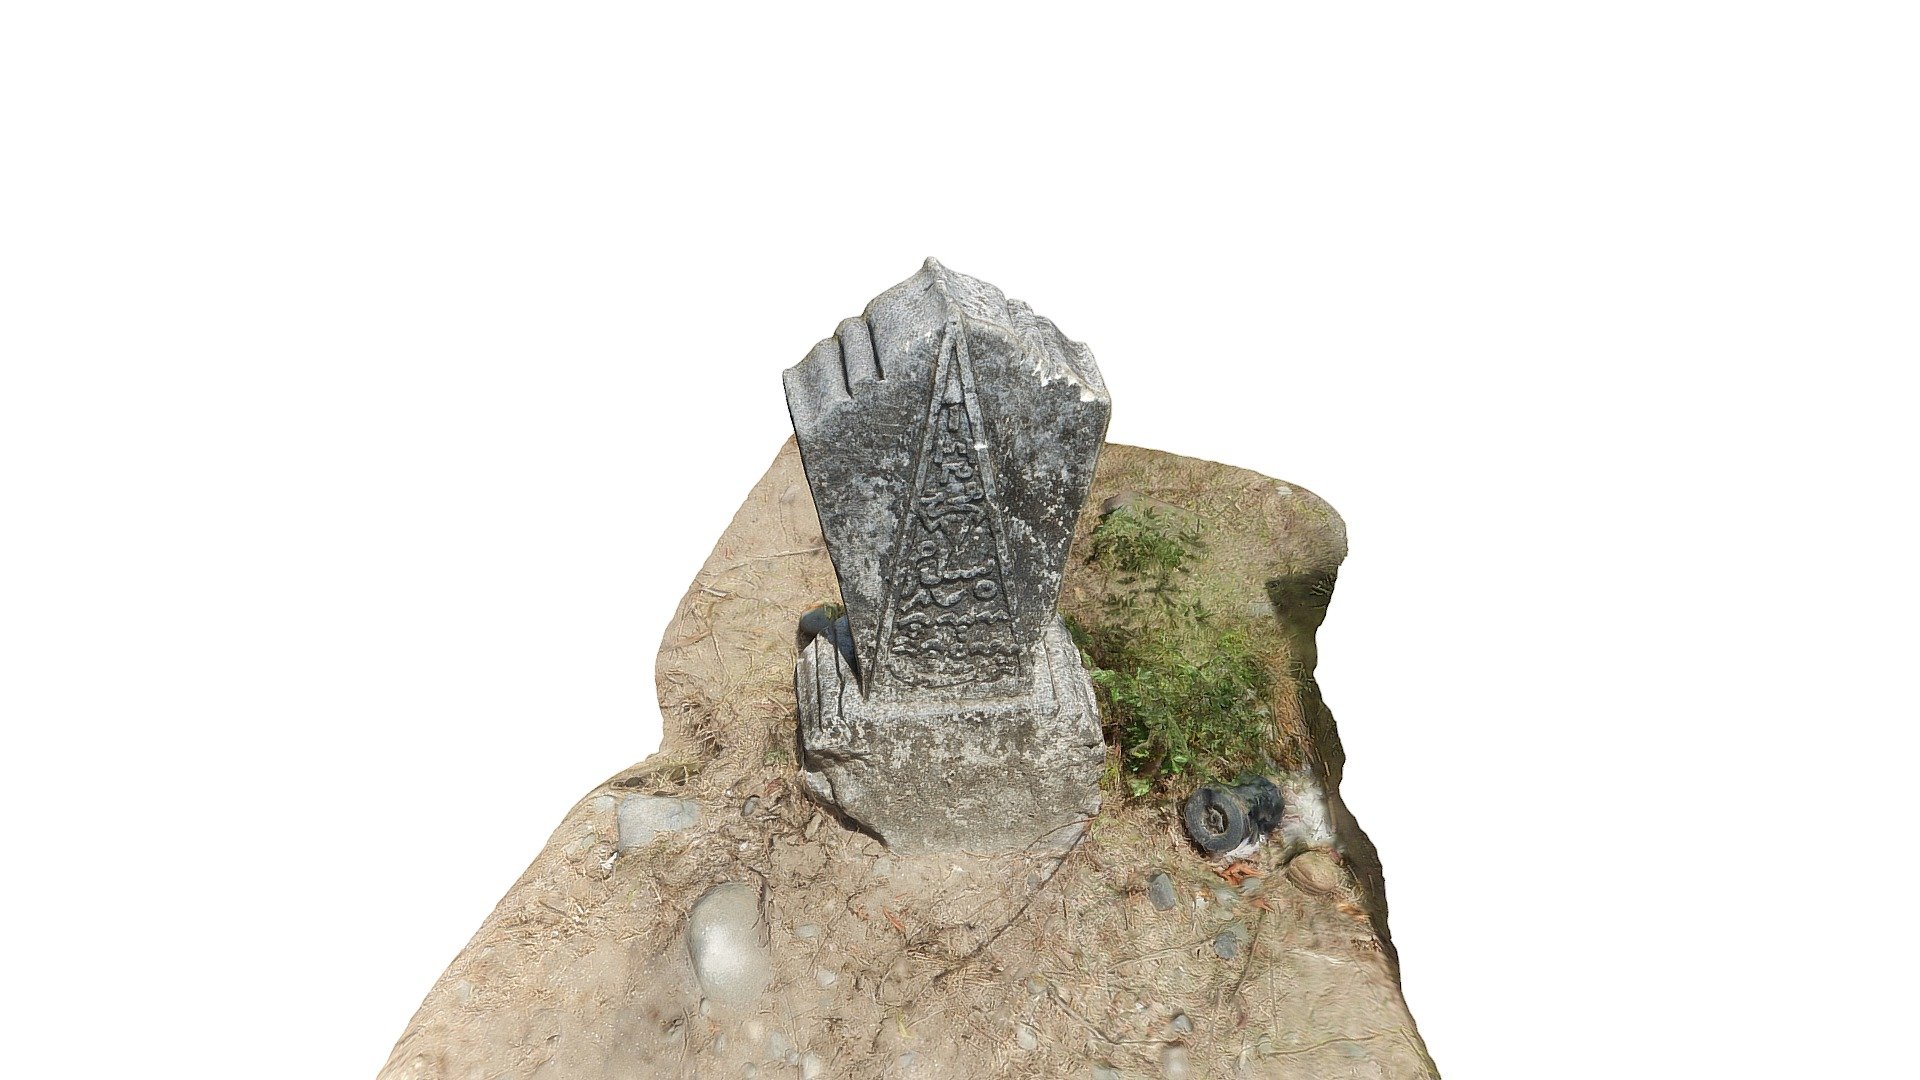 Situs Makam Kramat, Utan, Sumbawa, Indonesia - Makam Kramat, Object 6 - 3D model by Sumbawa Cultural Heritage (@sumbawa) 3d model